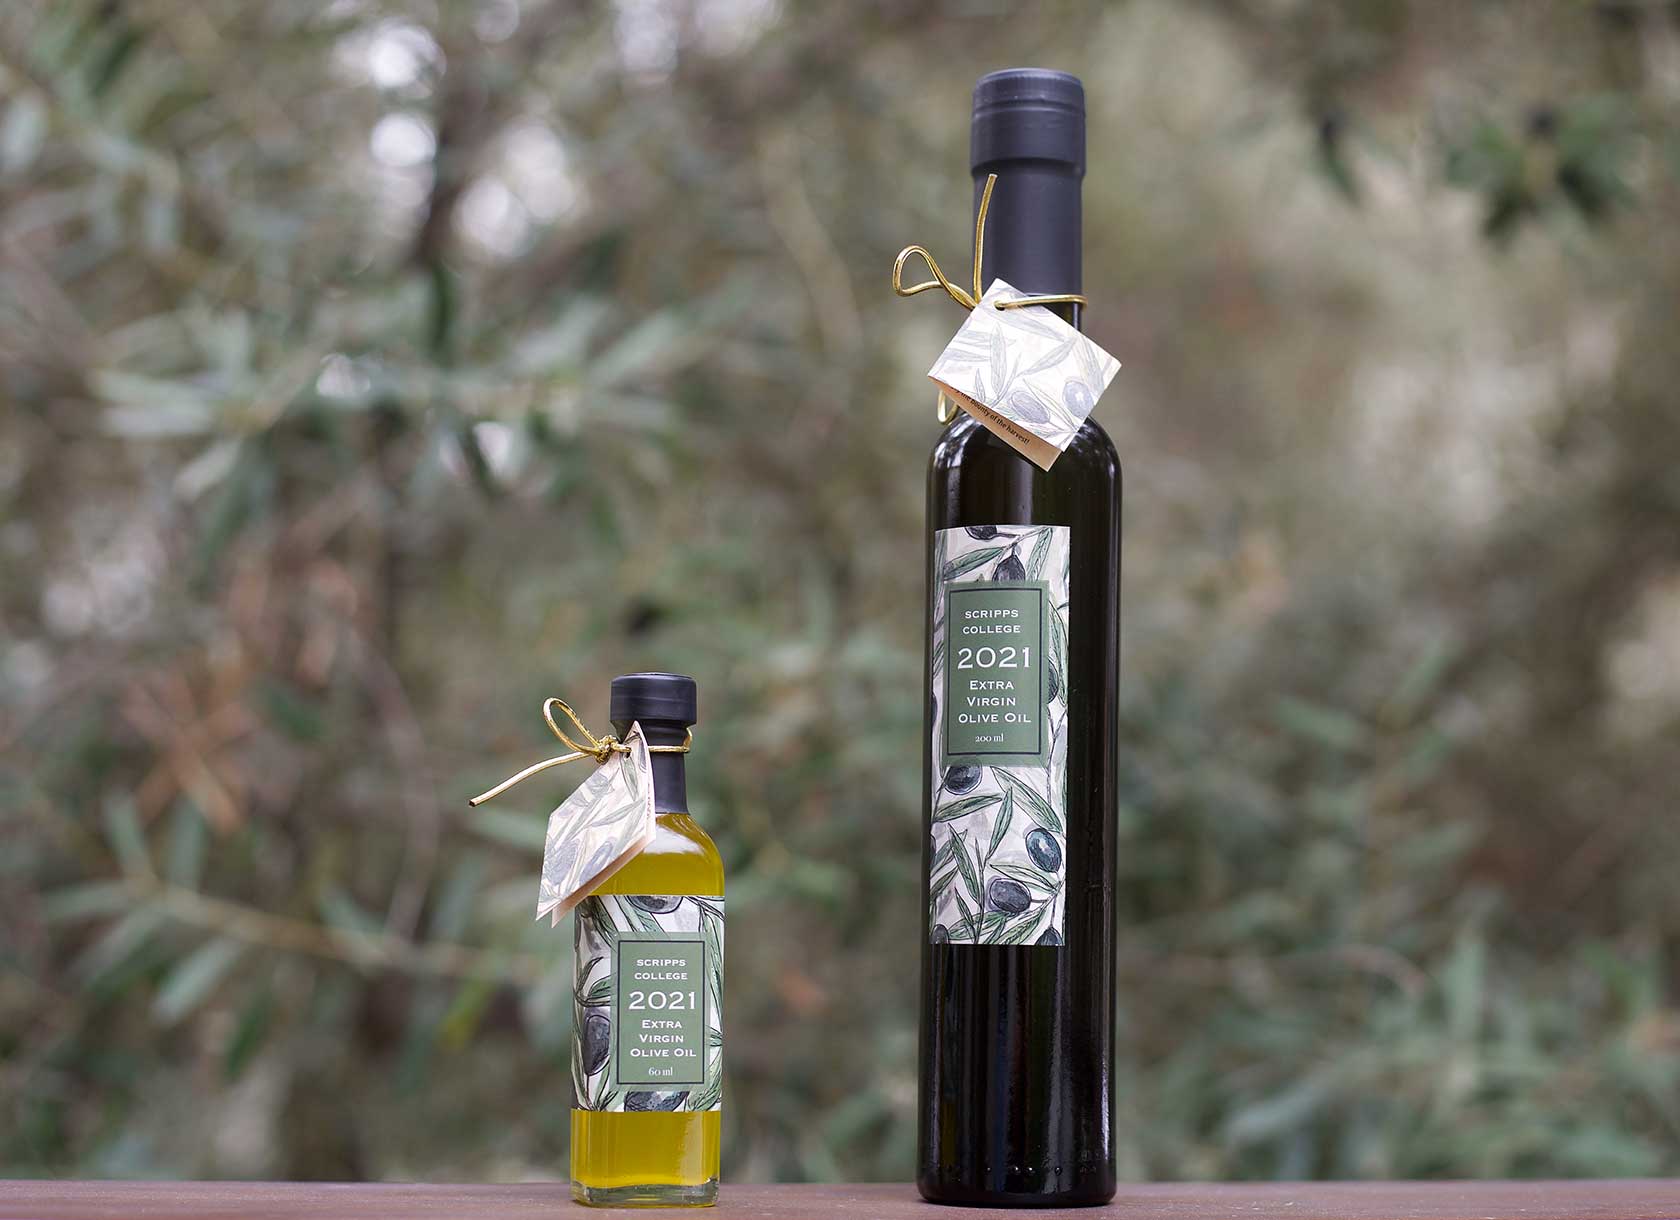 Bottles of olive oil from Scripps College's November 2021 Olive Harvest